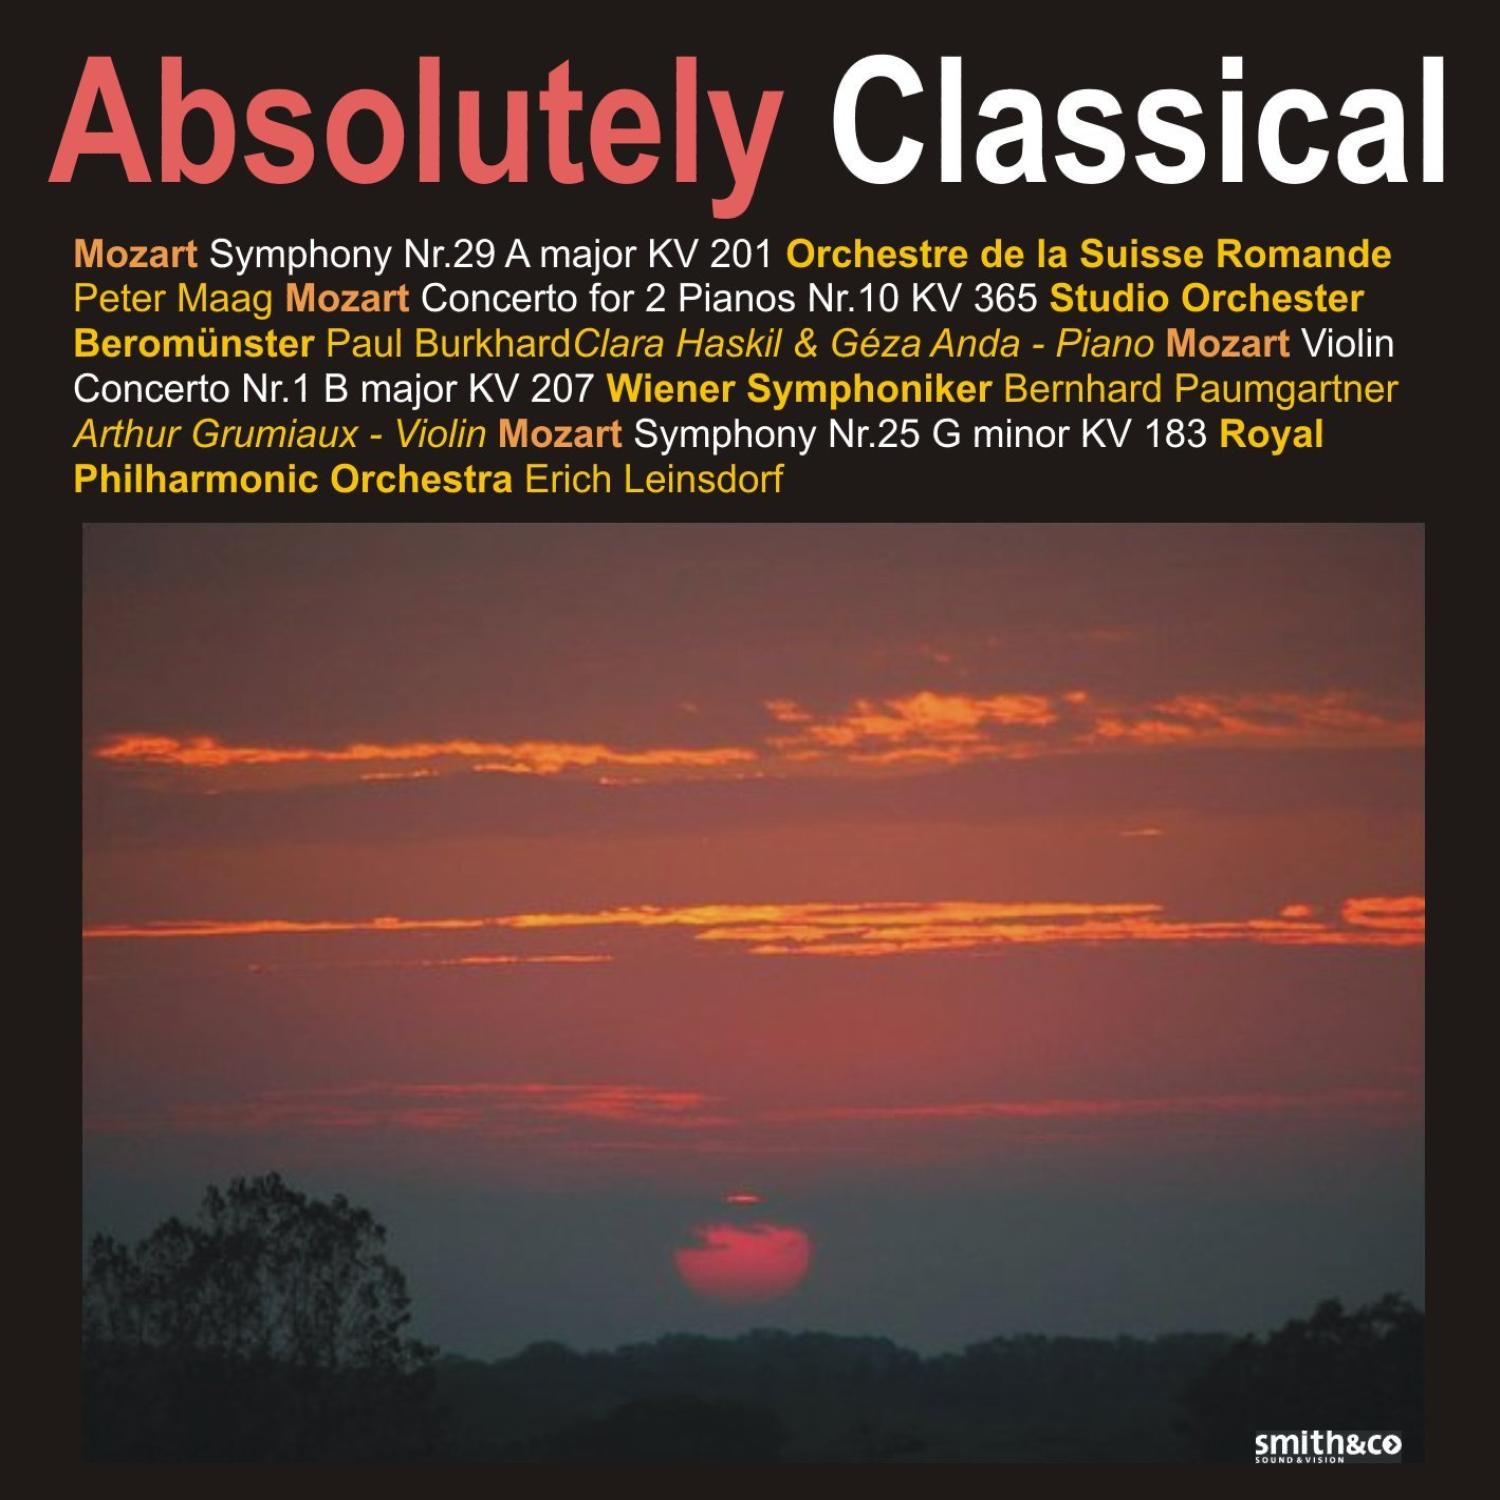 Mozart: Symphony Nos. 29 & 25, Concerto for 2 Pianos No. 10, Violin Concerto No. 1